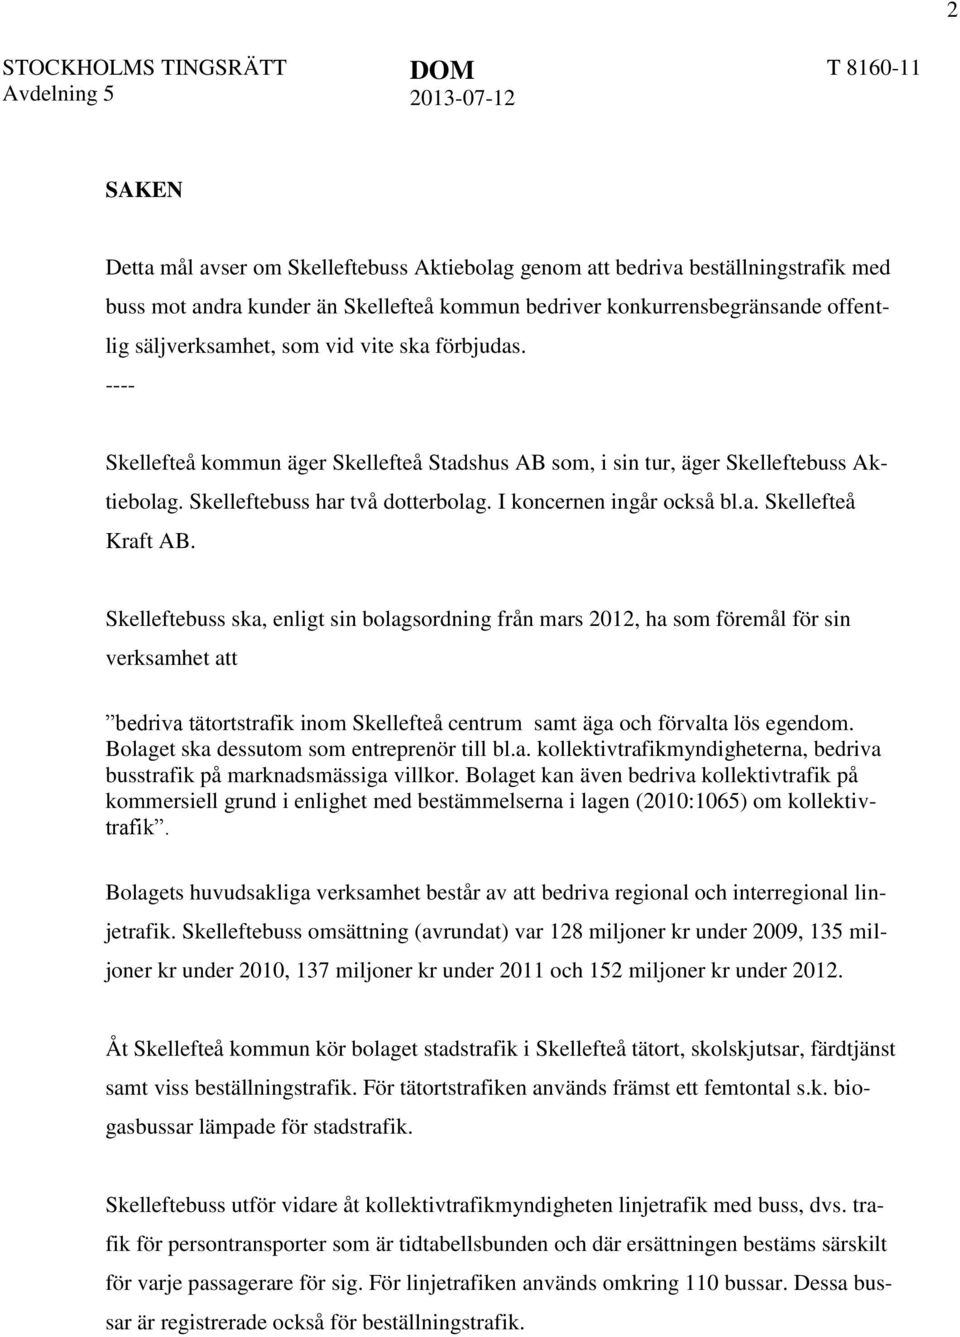 Skelleftebuss ska, enligt sin bolagsordning från mars 2012, ha som föremål för sin verksamhet att bedriva tätortstrafik inom Skellefteå centrum samt äga och förvalta lös egendom.